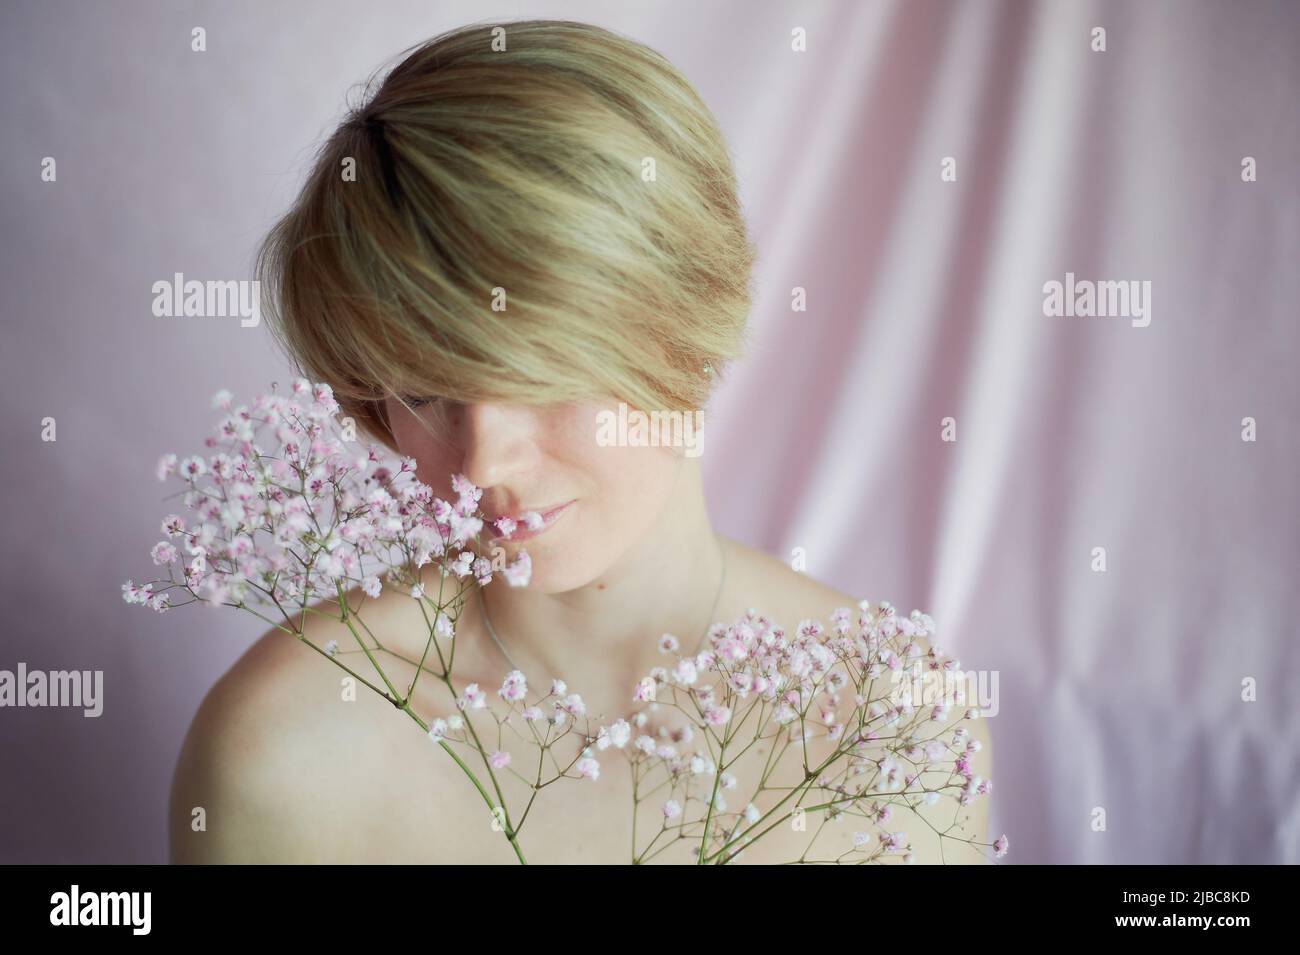 Ritratto di una ragazza su sfondo rosa con fiori. Tenerezza e femminilità. La sfera della bellezza e della salute delle donne. Taglio corto, capelli biondi Foto Stock